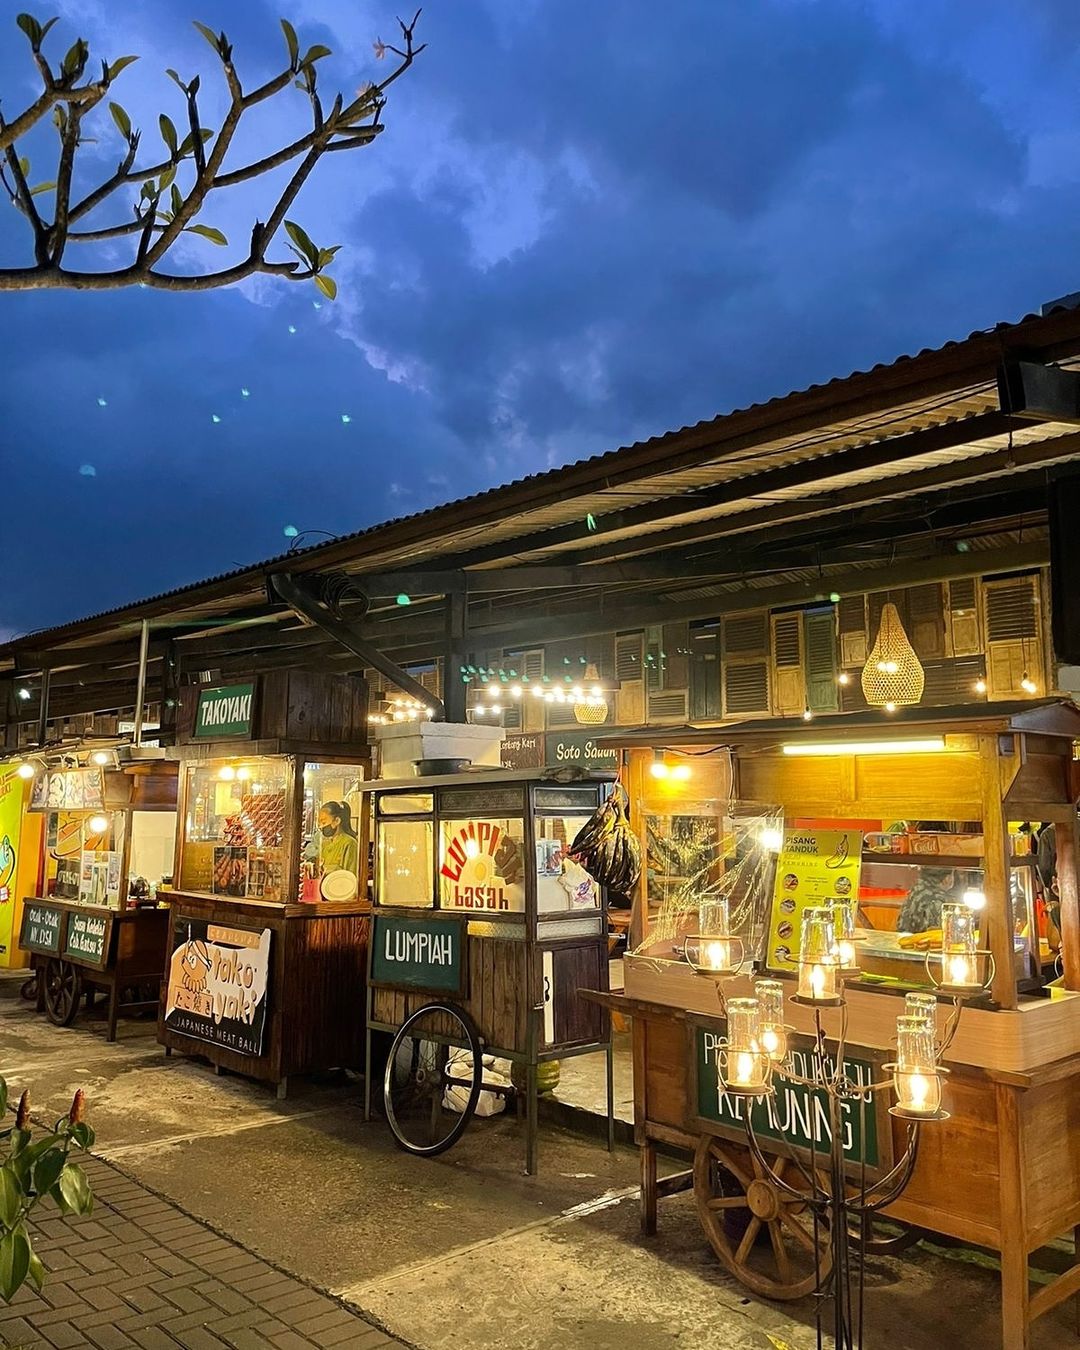 Tempat Makan Enak Di Bandung Paskal Food Market Image From @paskalfoodmarket